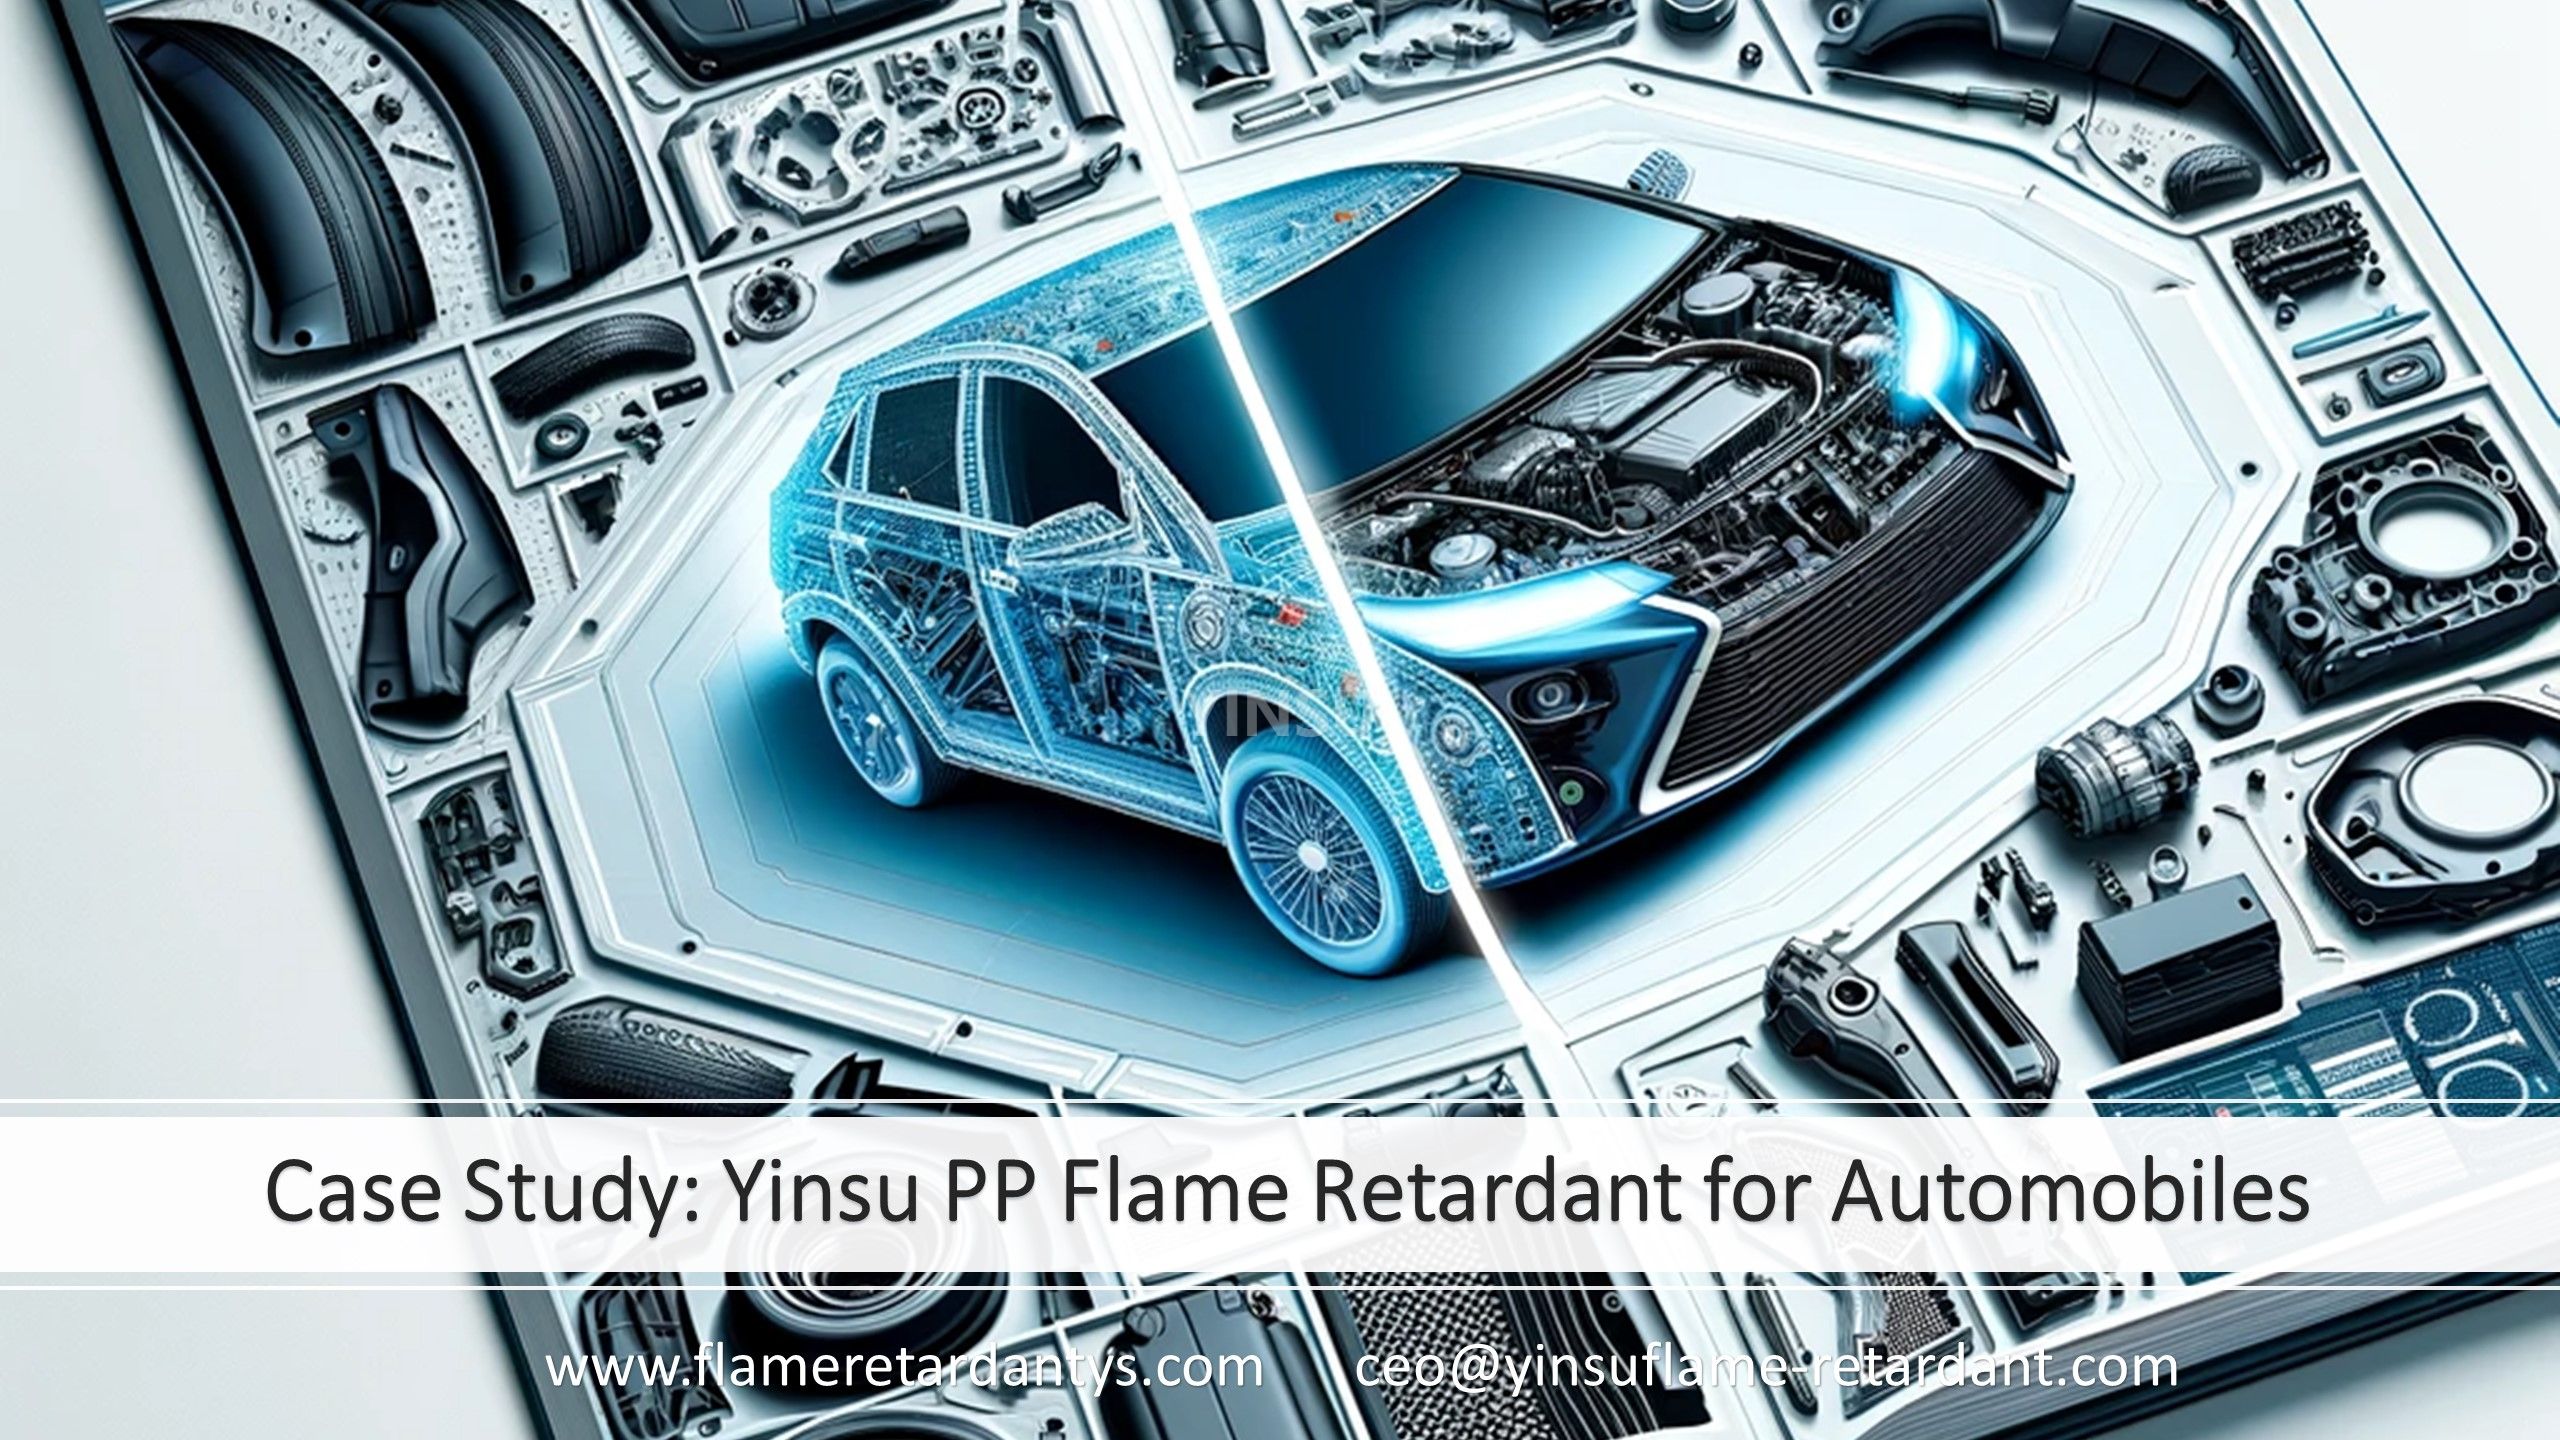 Estudio de caso: Retardante de llama Yinsu PP para automóviles